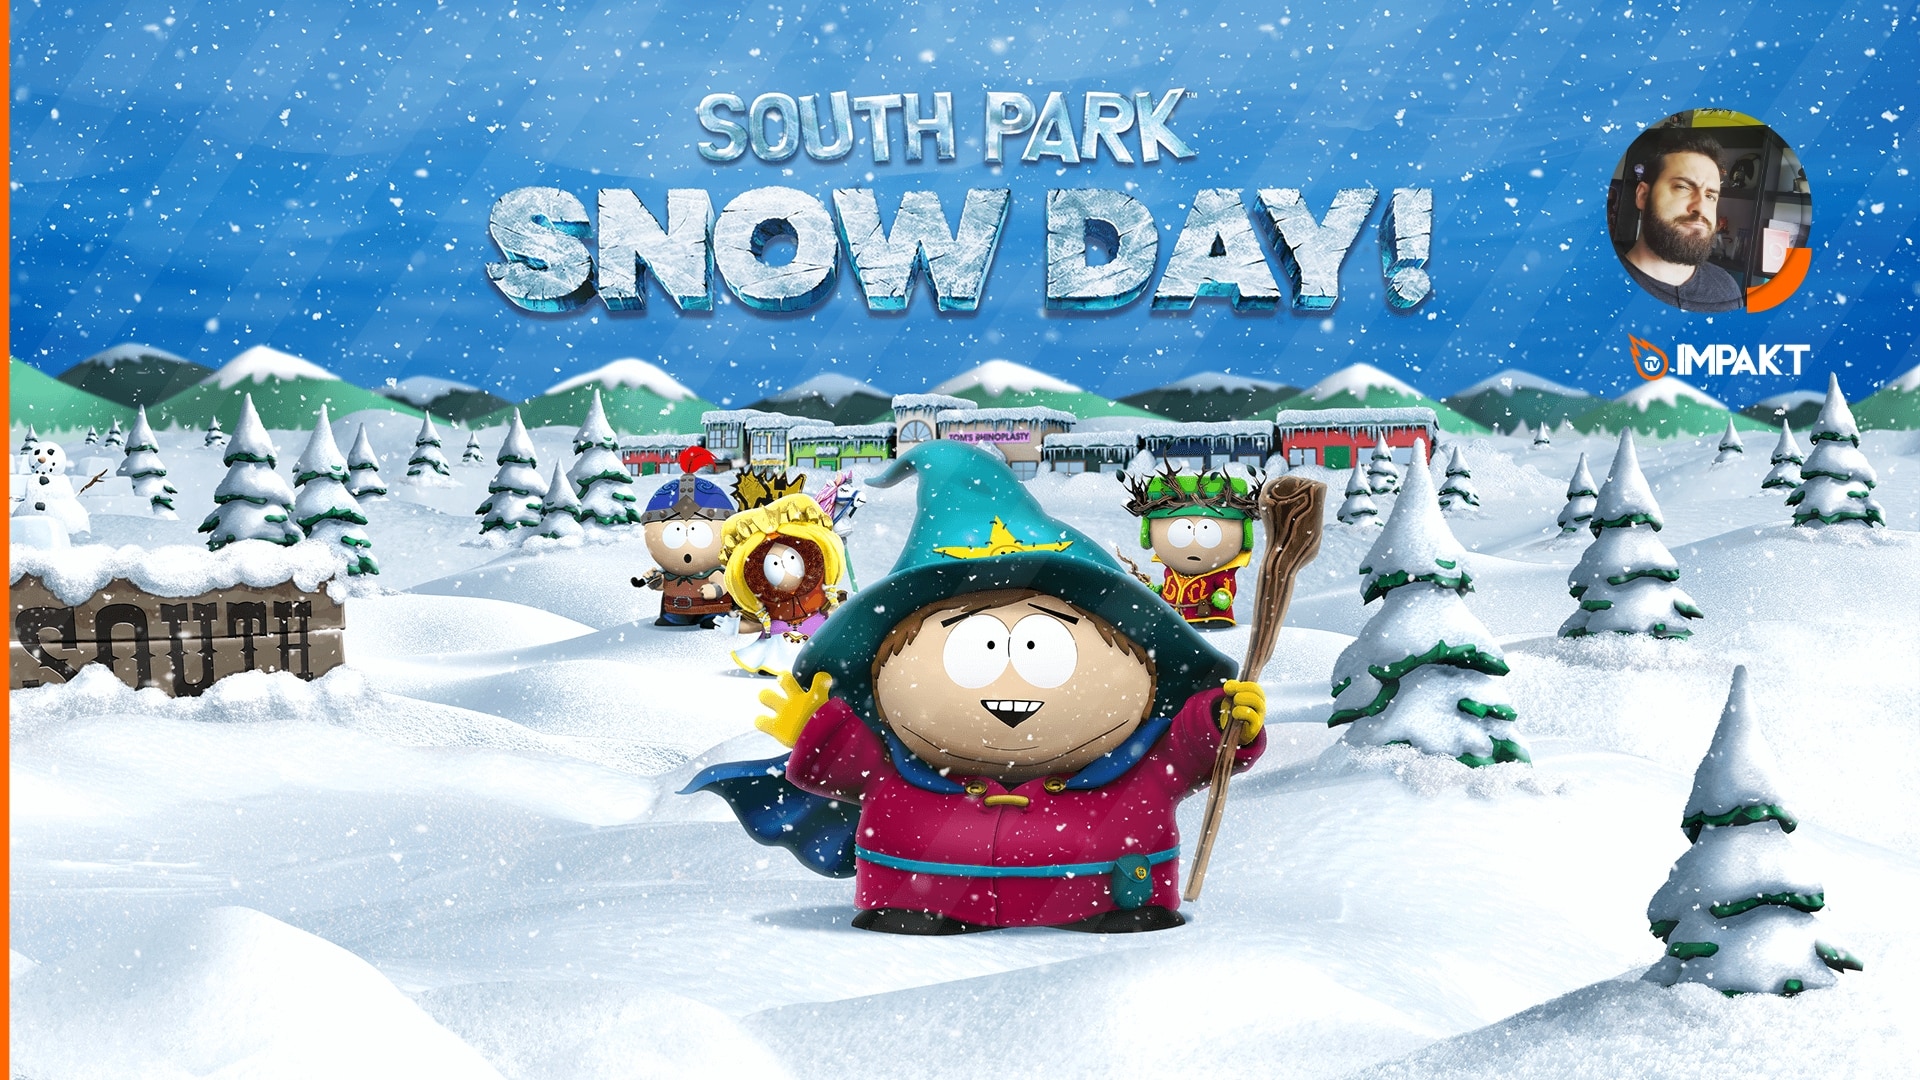 Review final de Souh Park: Snow Day por impakt